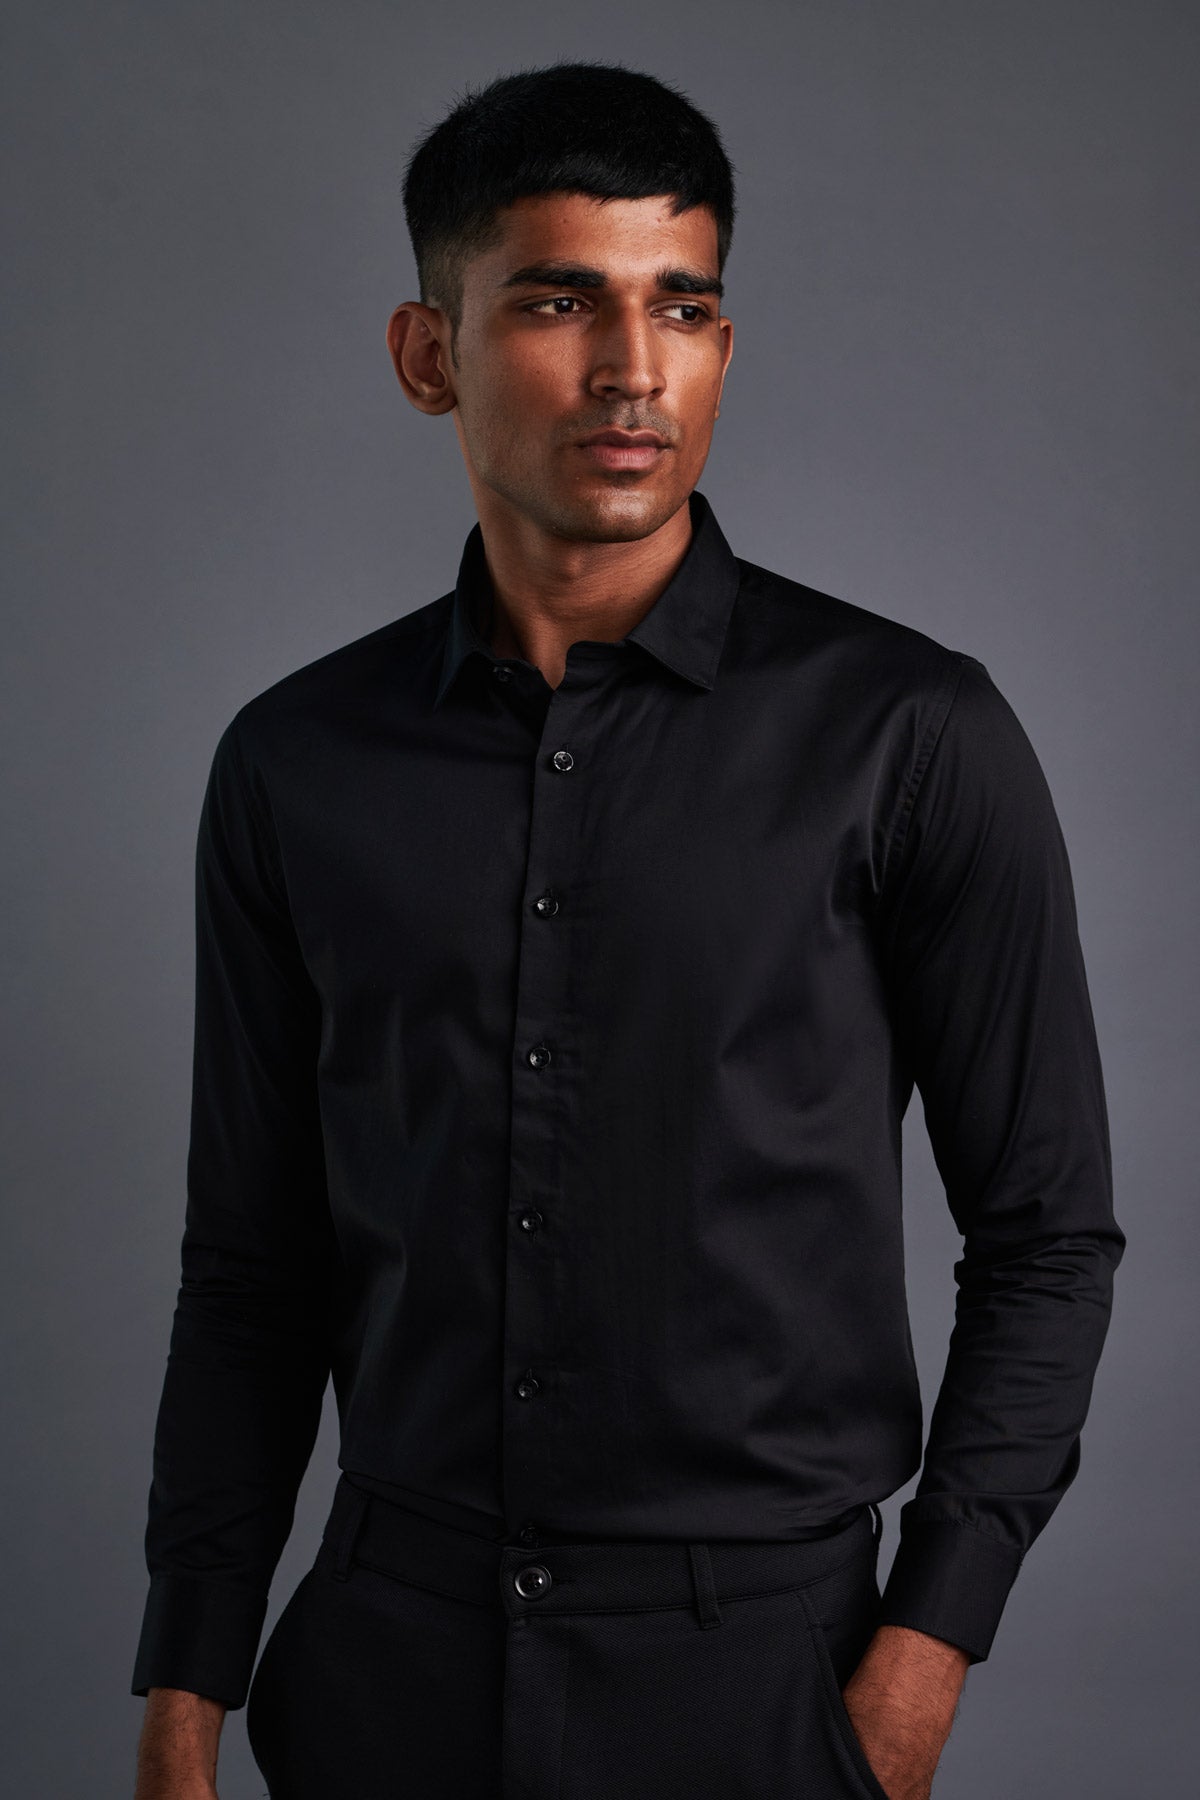 Buy Black Classic Shirt For Men's Online